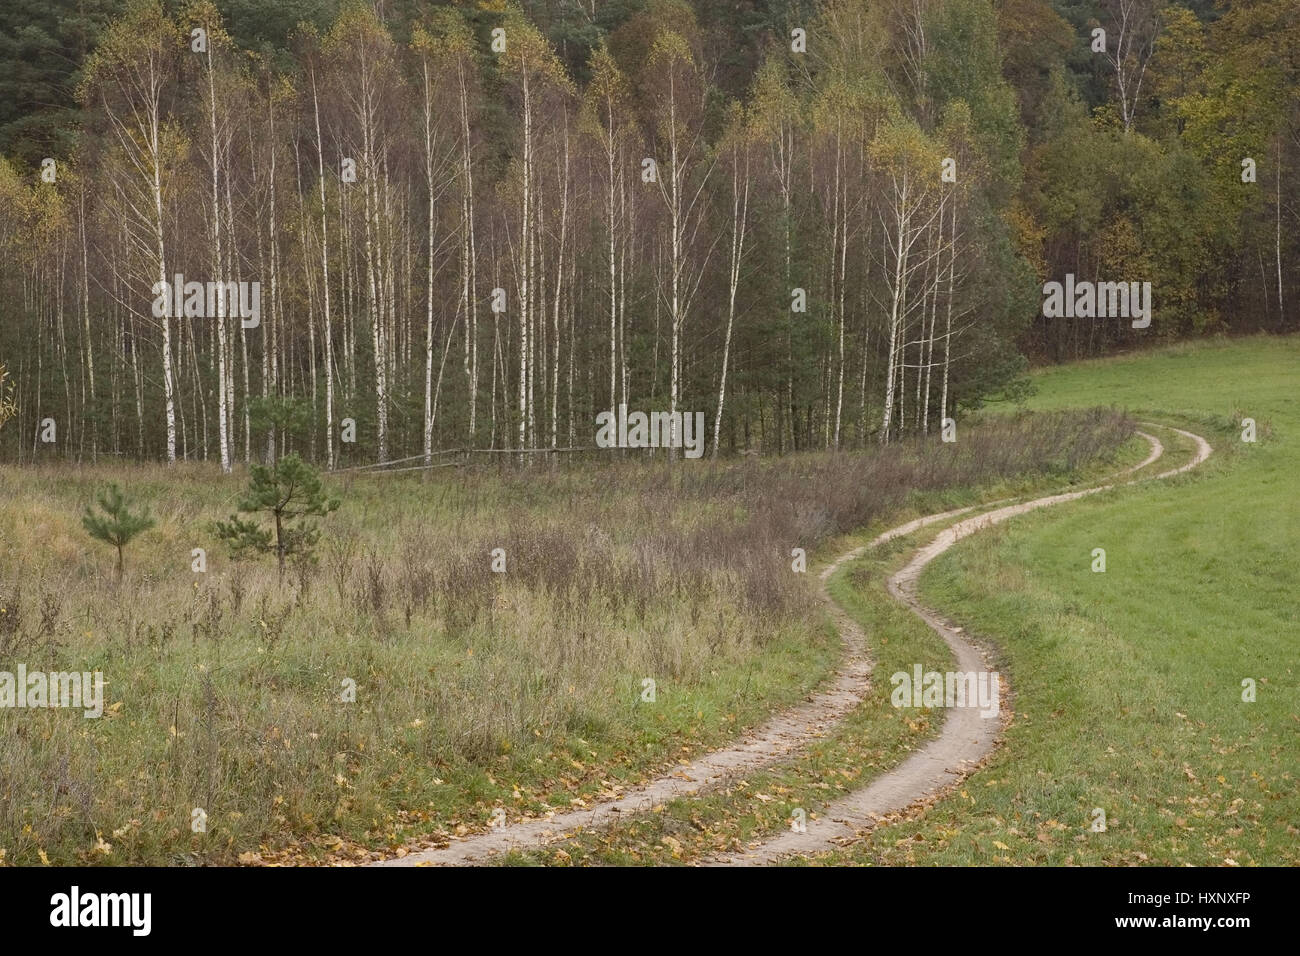 Country lane in the Autumnally coloured wood. Masuria Poland, Feldweg in den Herbstlich verfärbten Wald.Masuren Polen Stock Photo